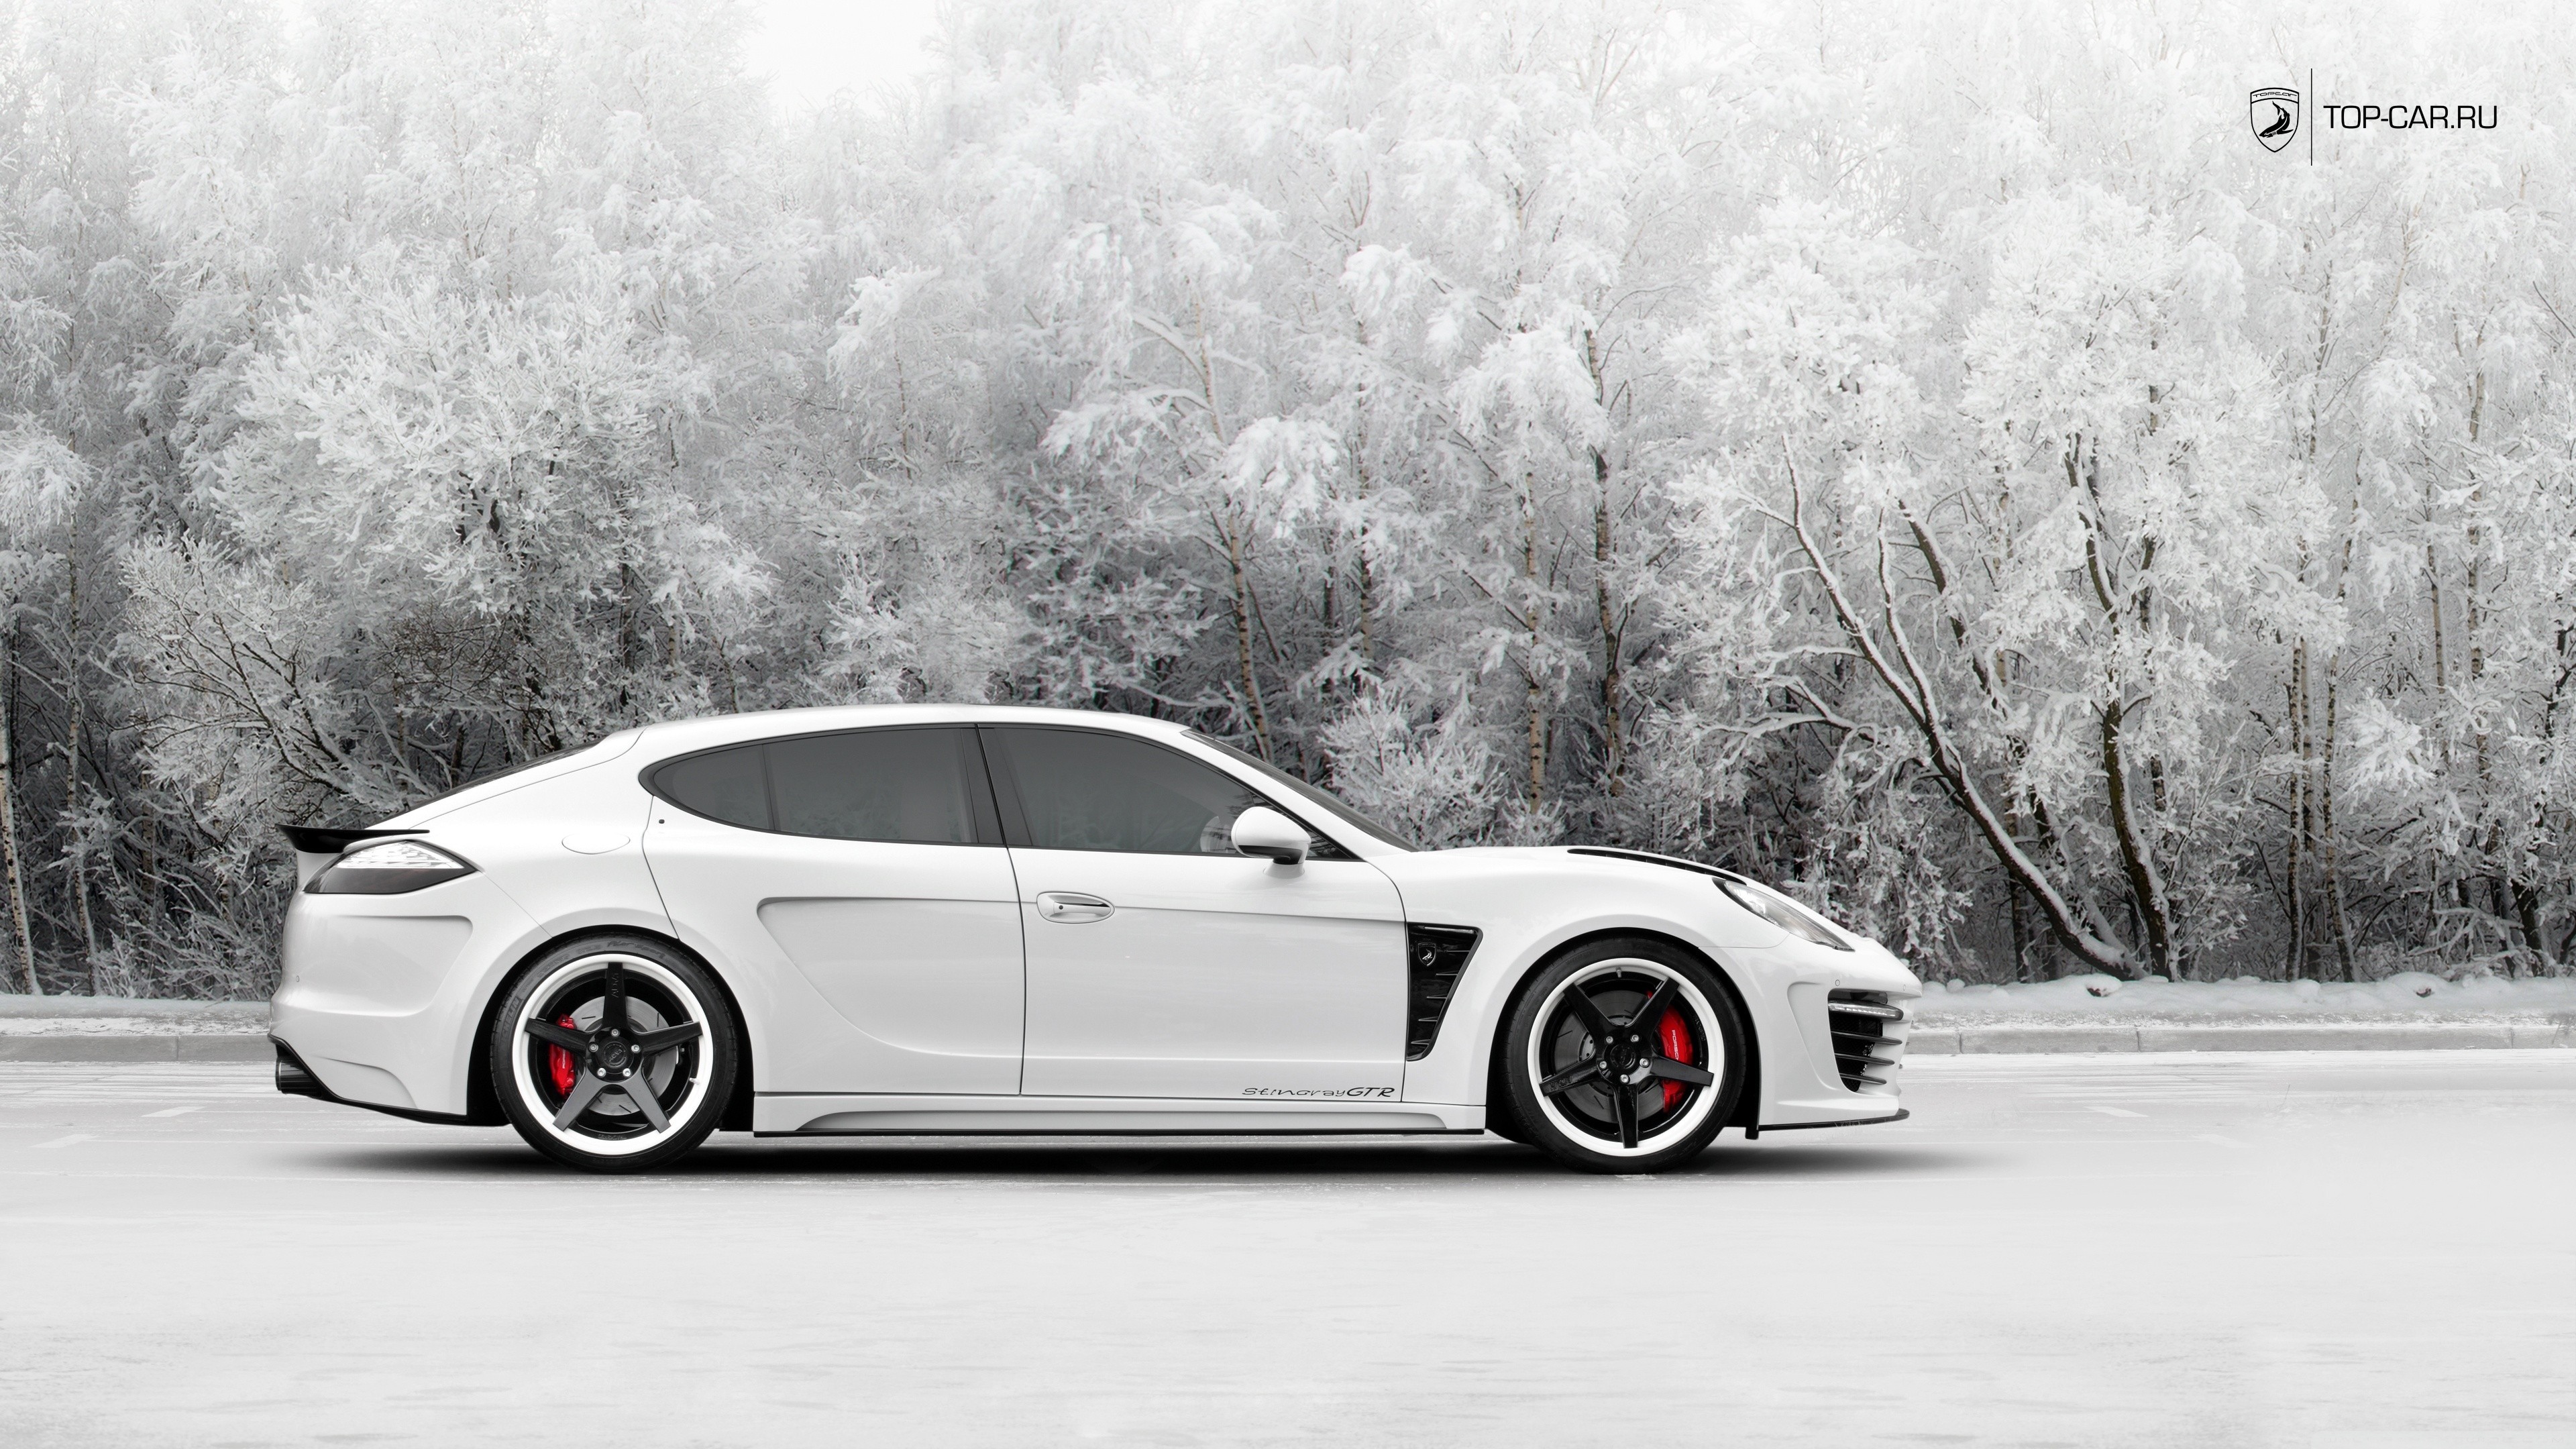 Porsche Panamera White Cars Winter Side